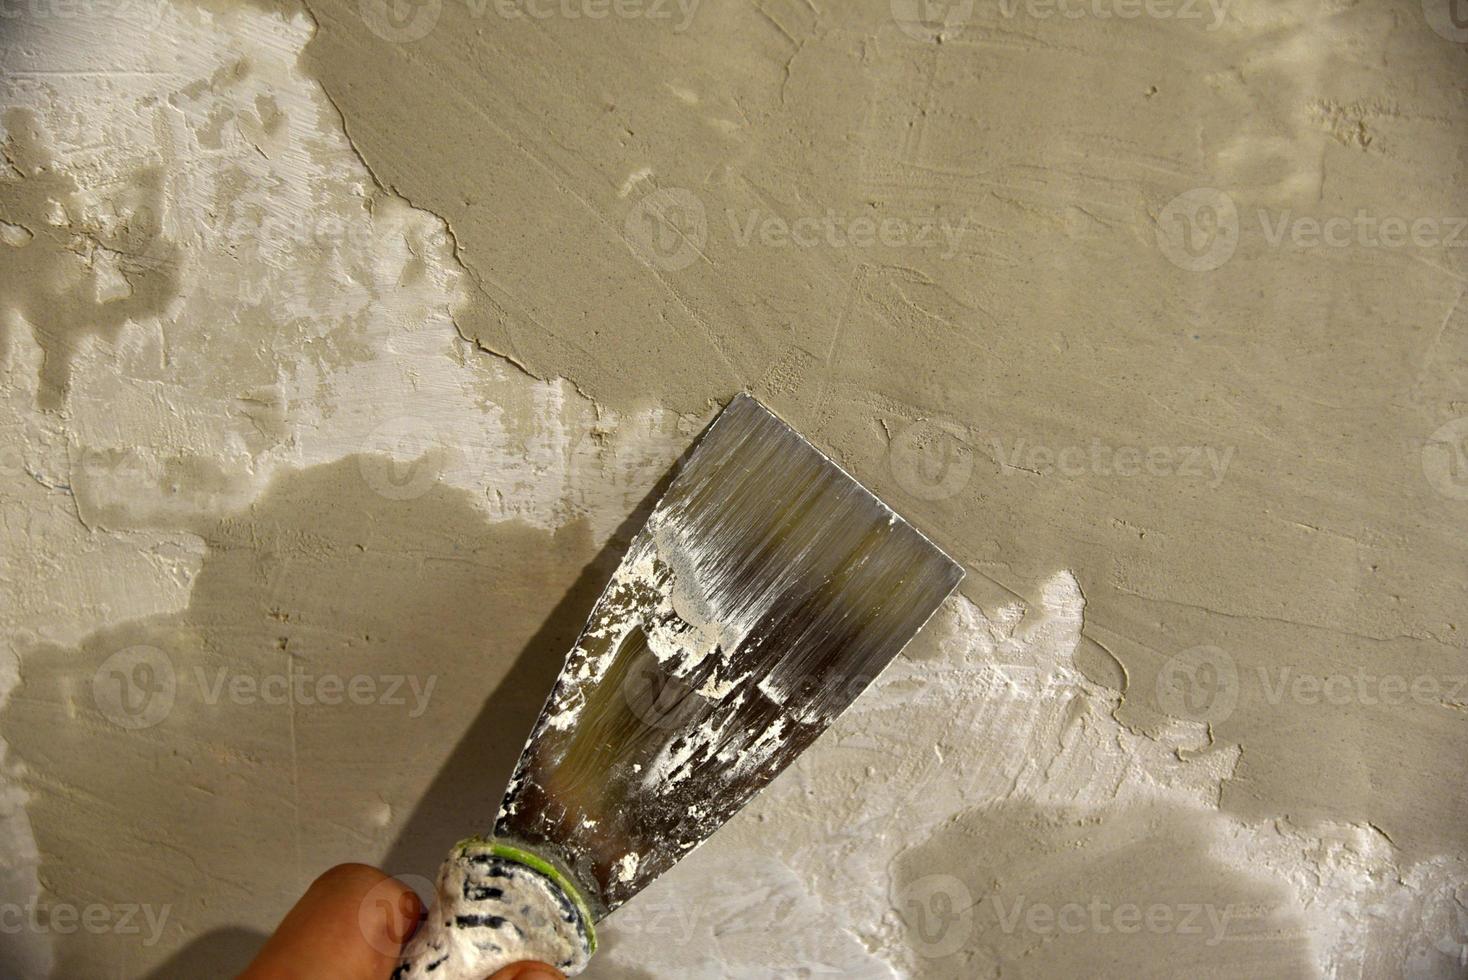 arbete med ett järn spatel när putsning de vägg med en cement lösning. reparera av de vägg med en murslev med cement. foto